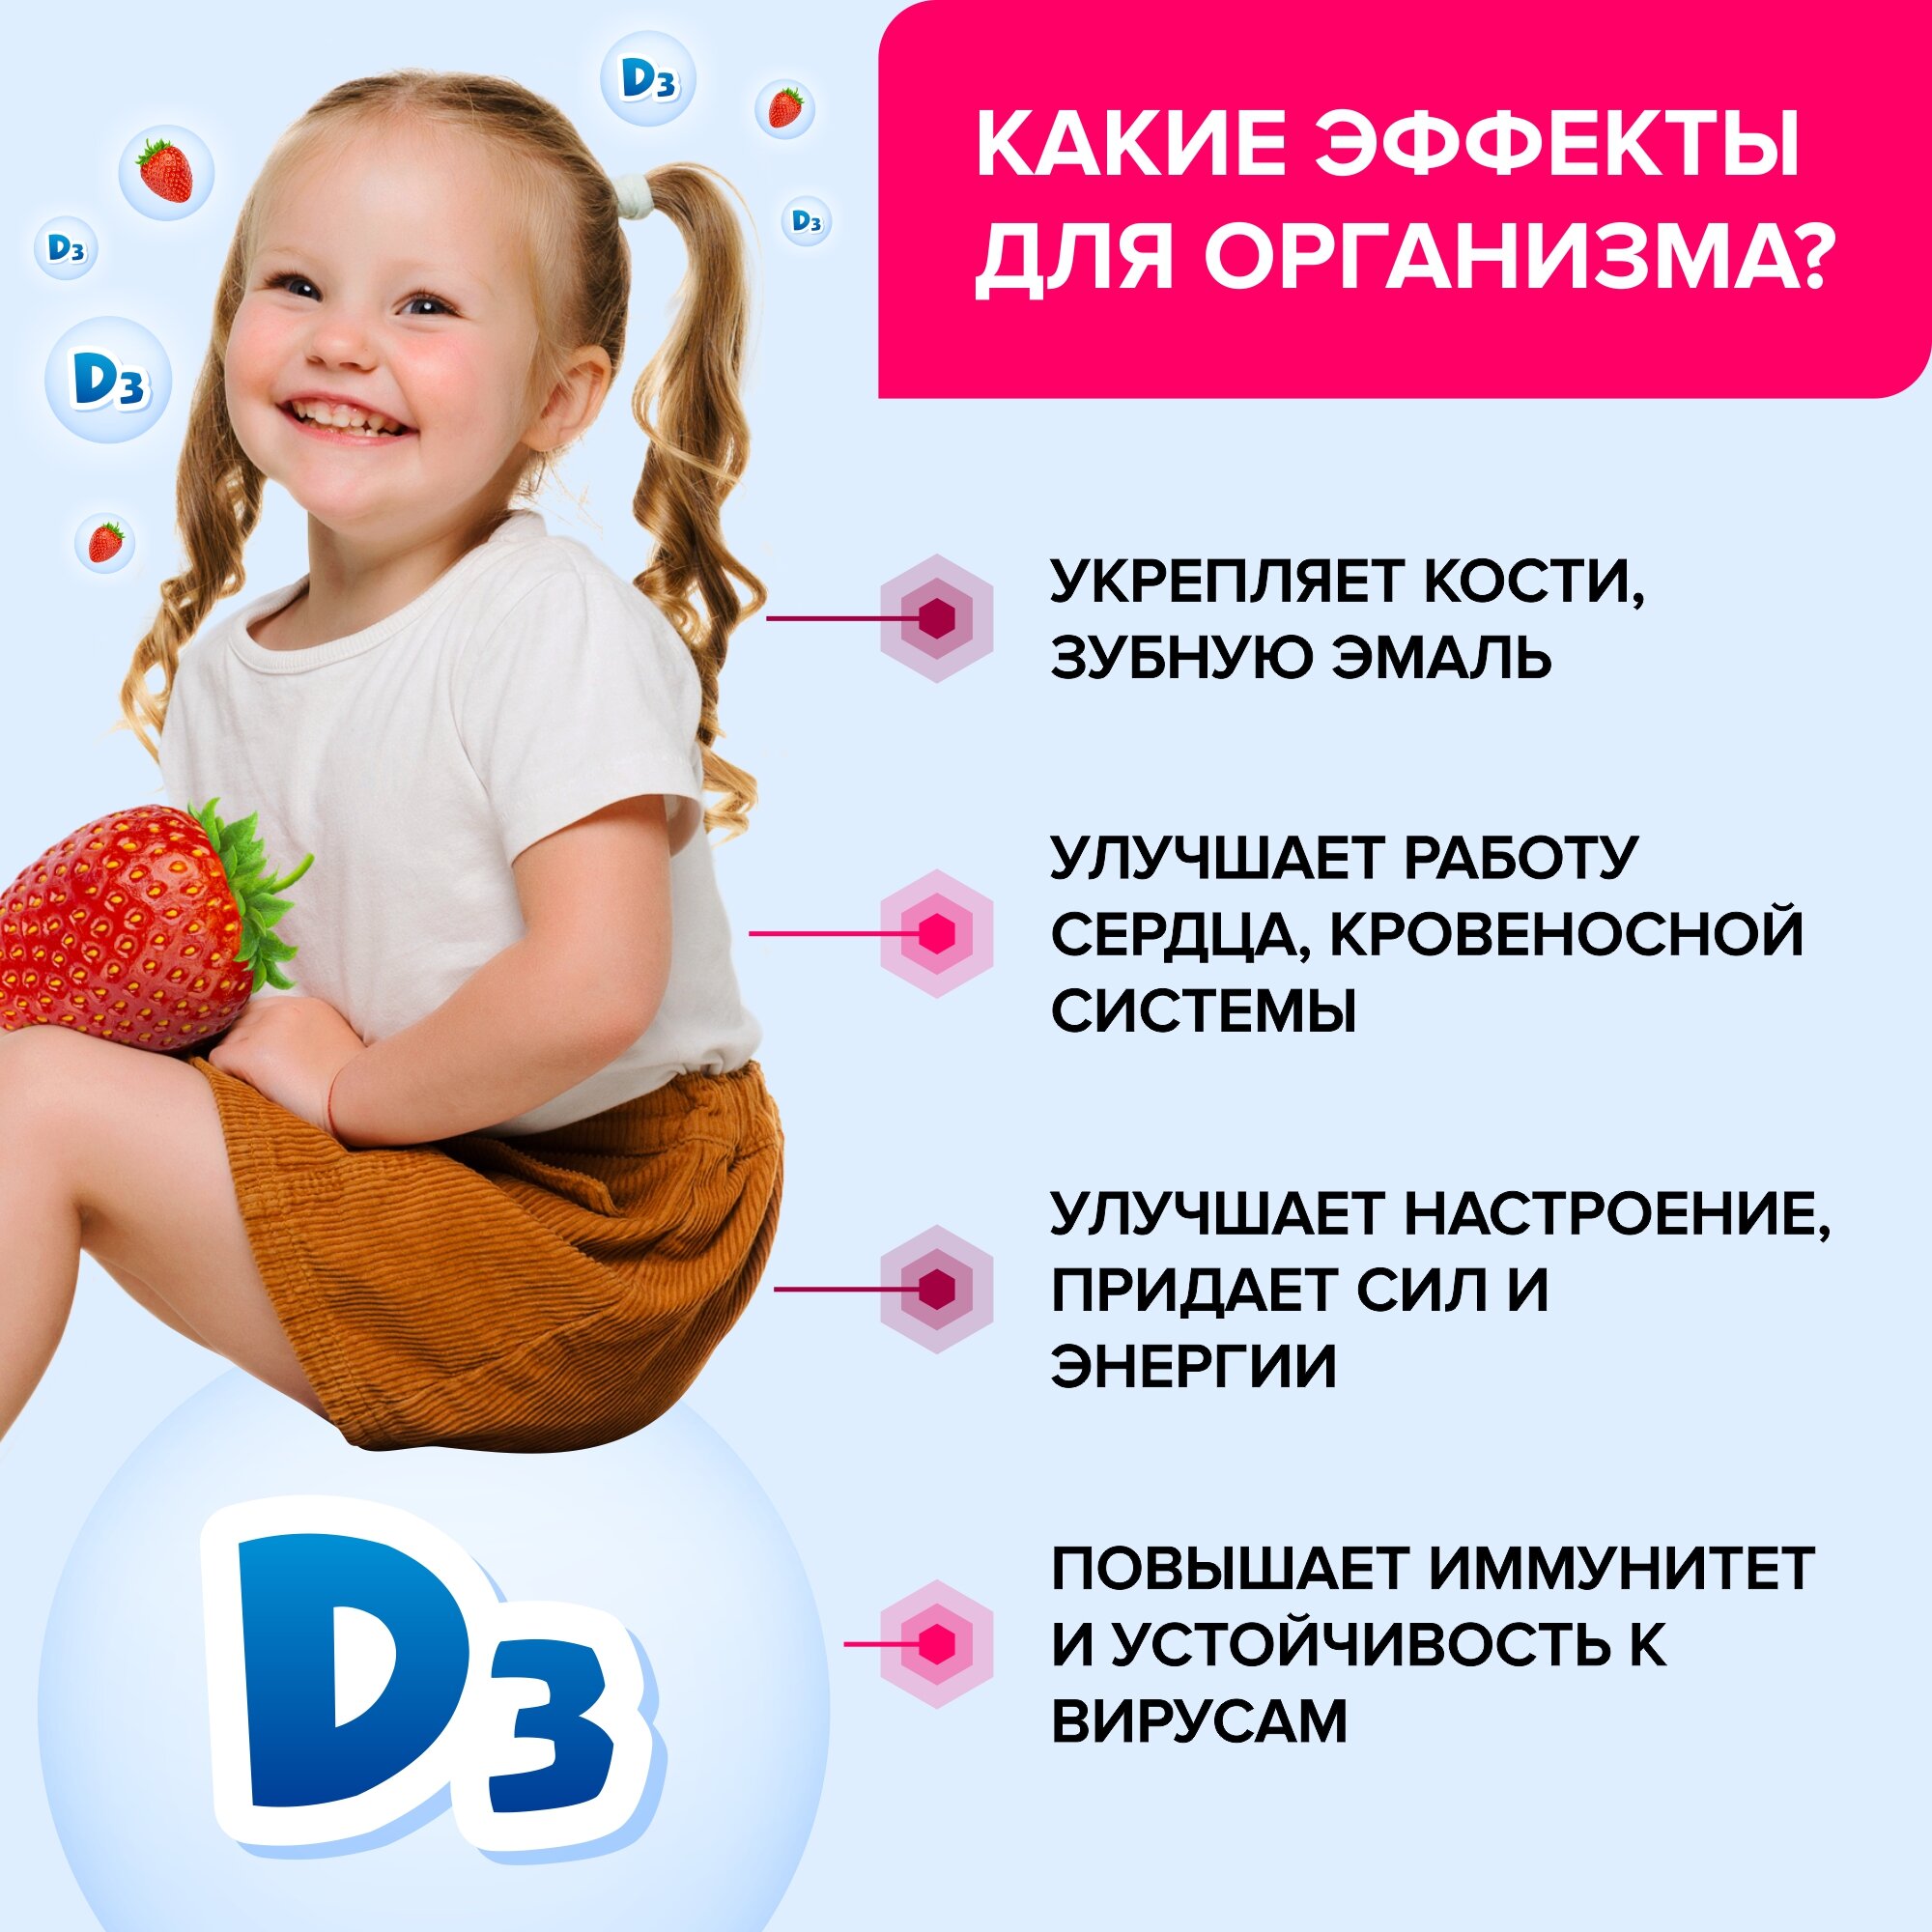 Витамин Д3 для детей, RISINGSTAR, спрей со вкусом клубники